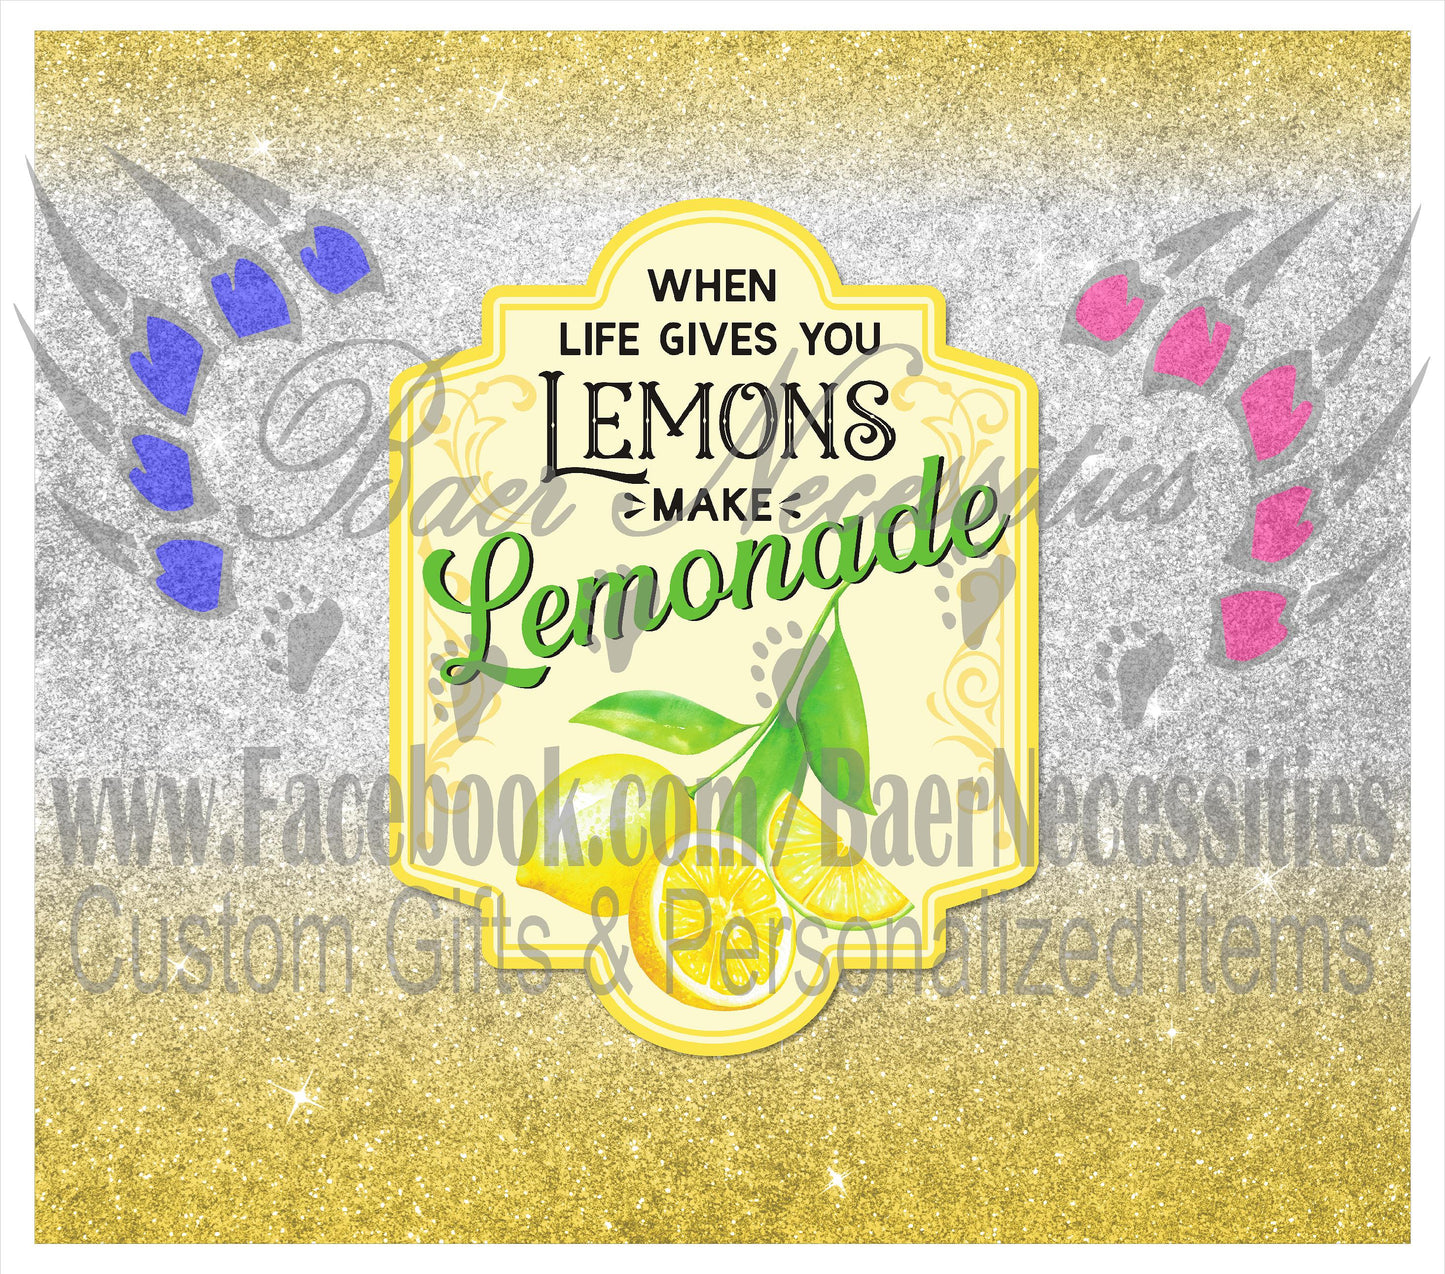 When Life gives you Lemons make Lemonade - Full Wrap